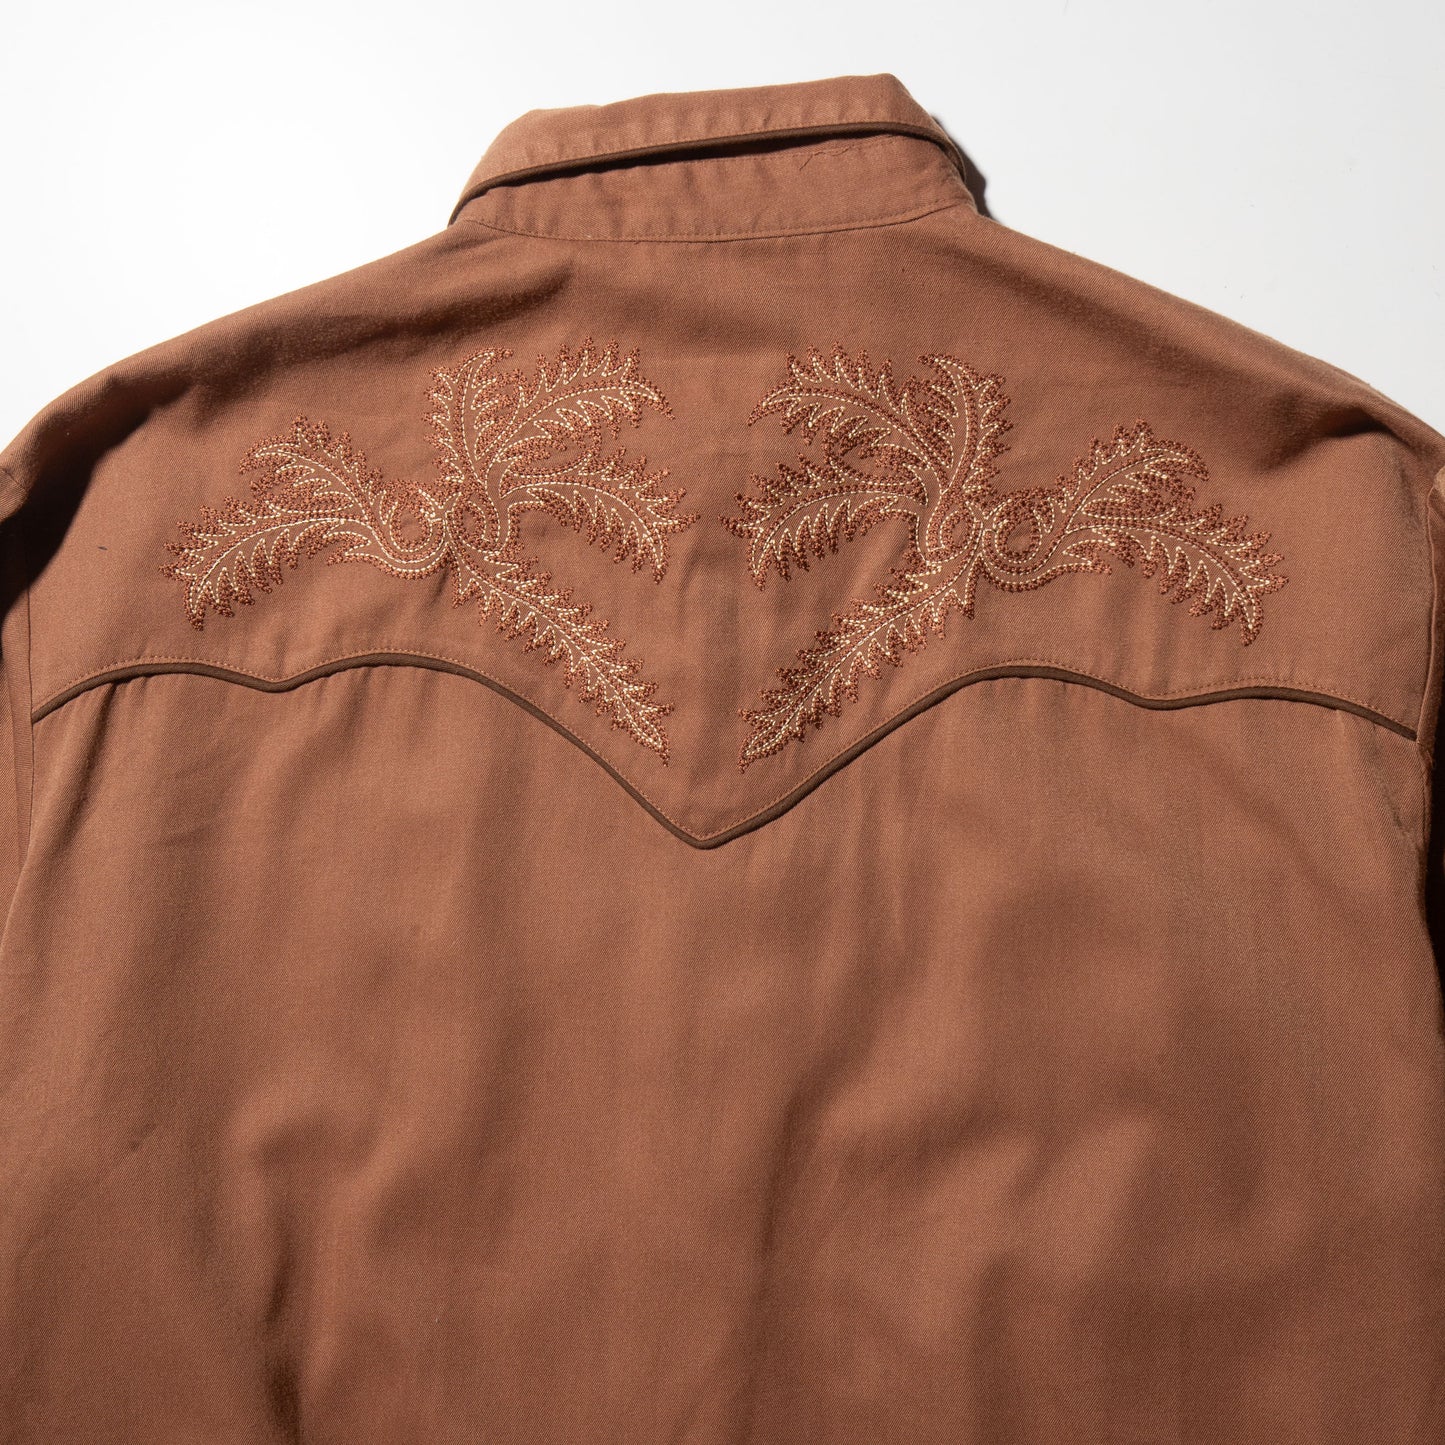 vintage resized short western shirt